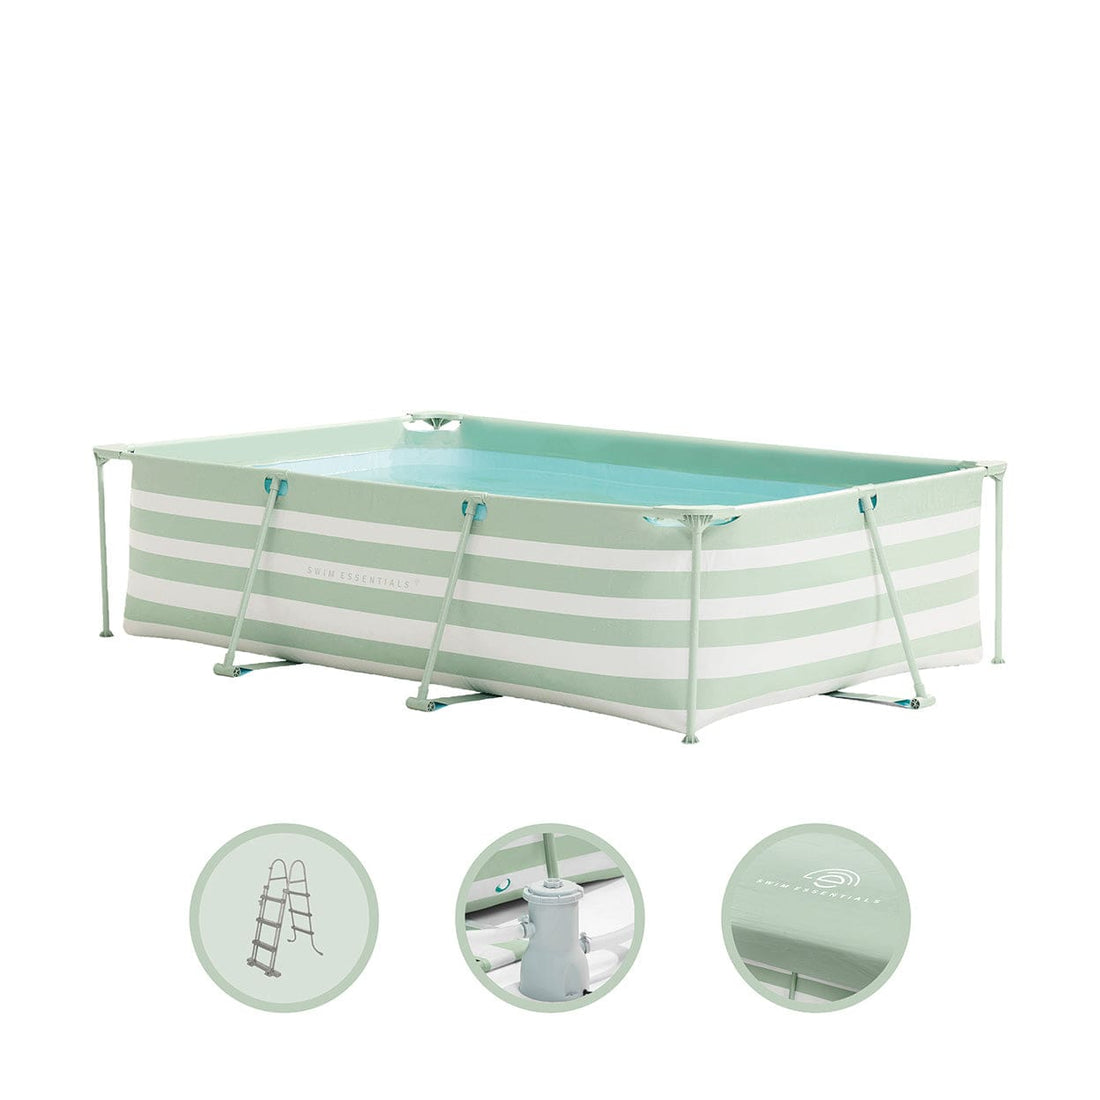 opzetzwembad-300x200x75-cm-groen-wit-met-accessoires-swim-essentials-1